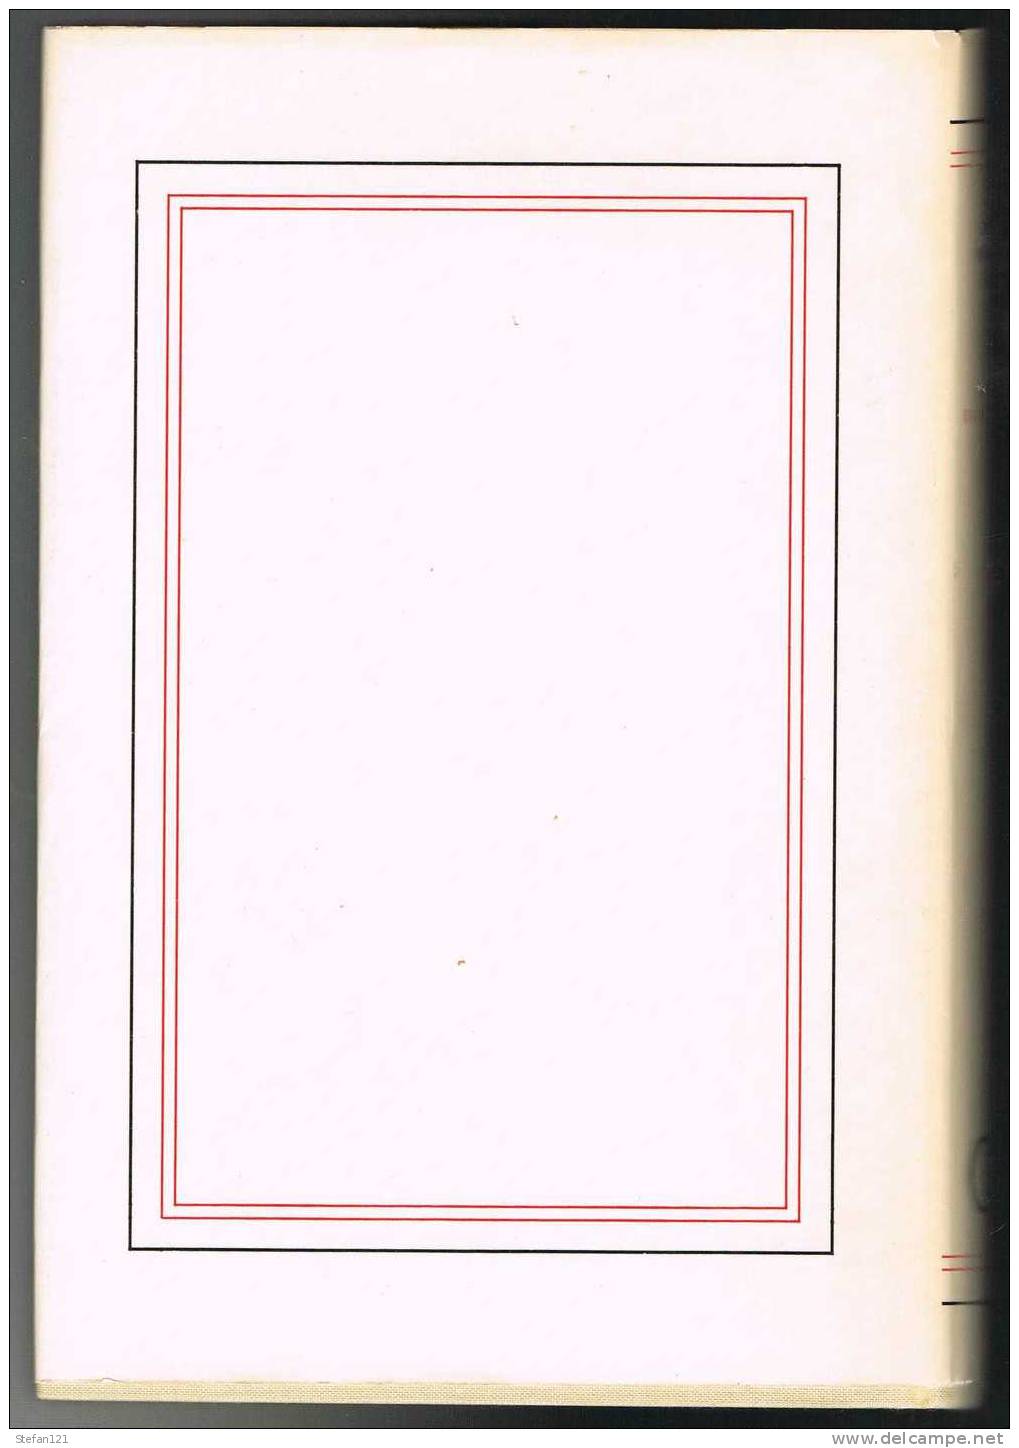 La Tête D'obsidienne - André Malraux - 1974 - Gallimard - 280 Pages+ 47 Pages Photos En Noir Et Blanc - Biographie